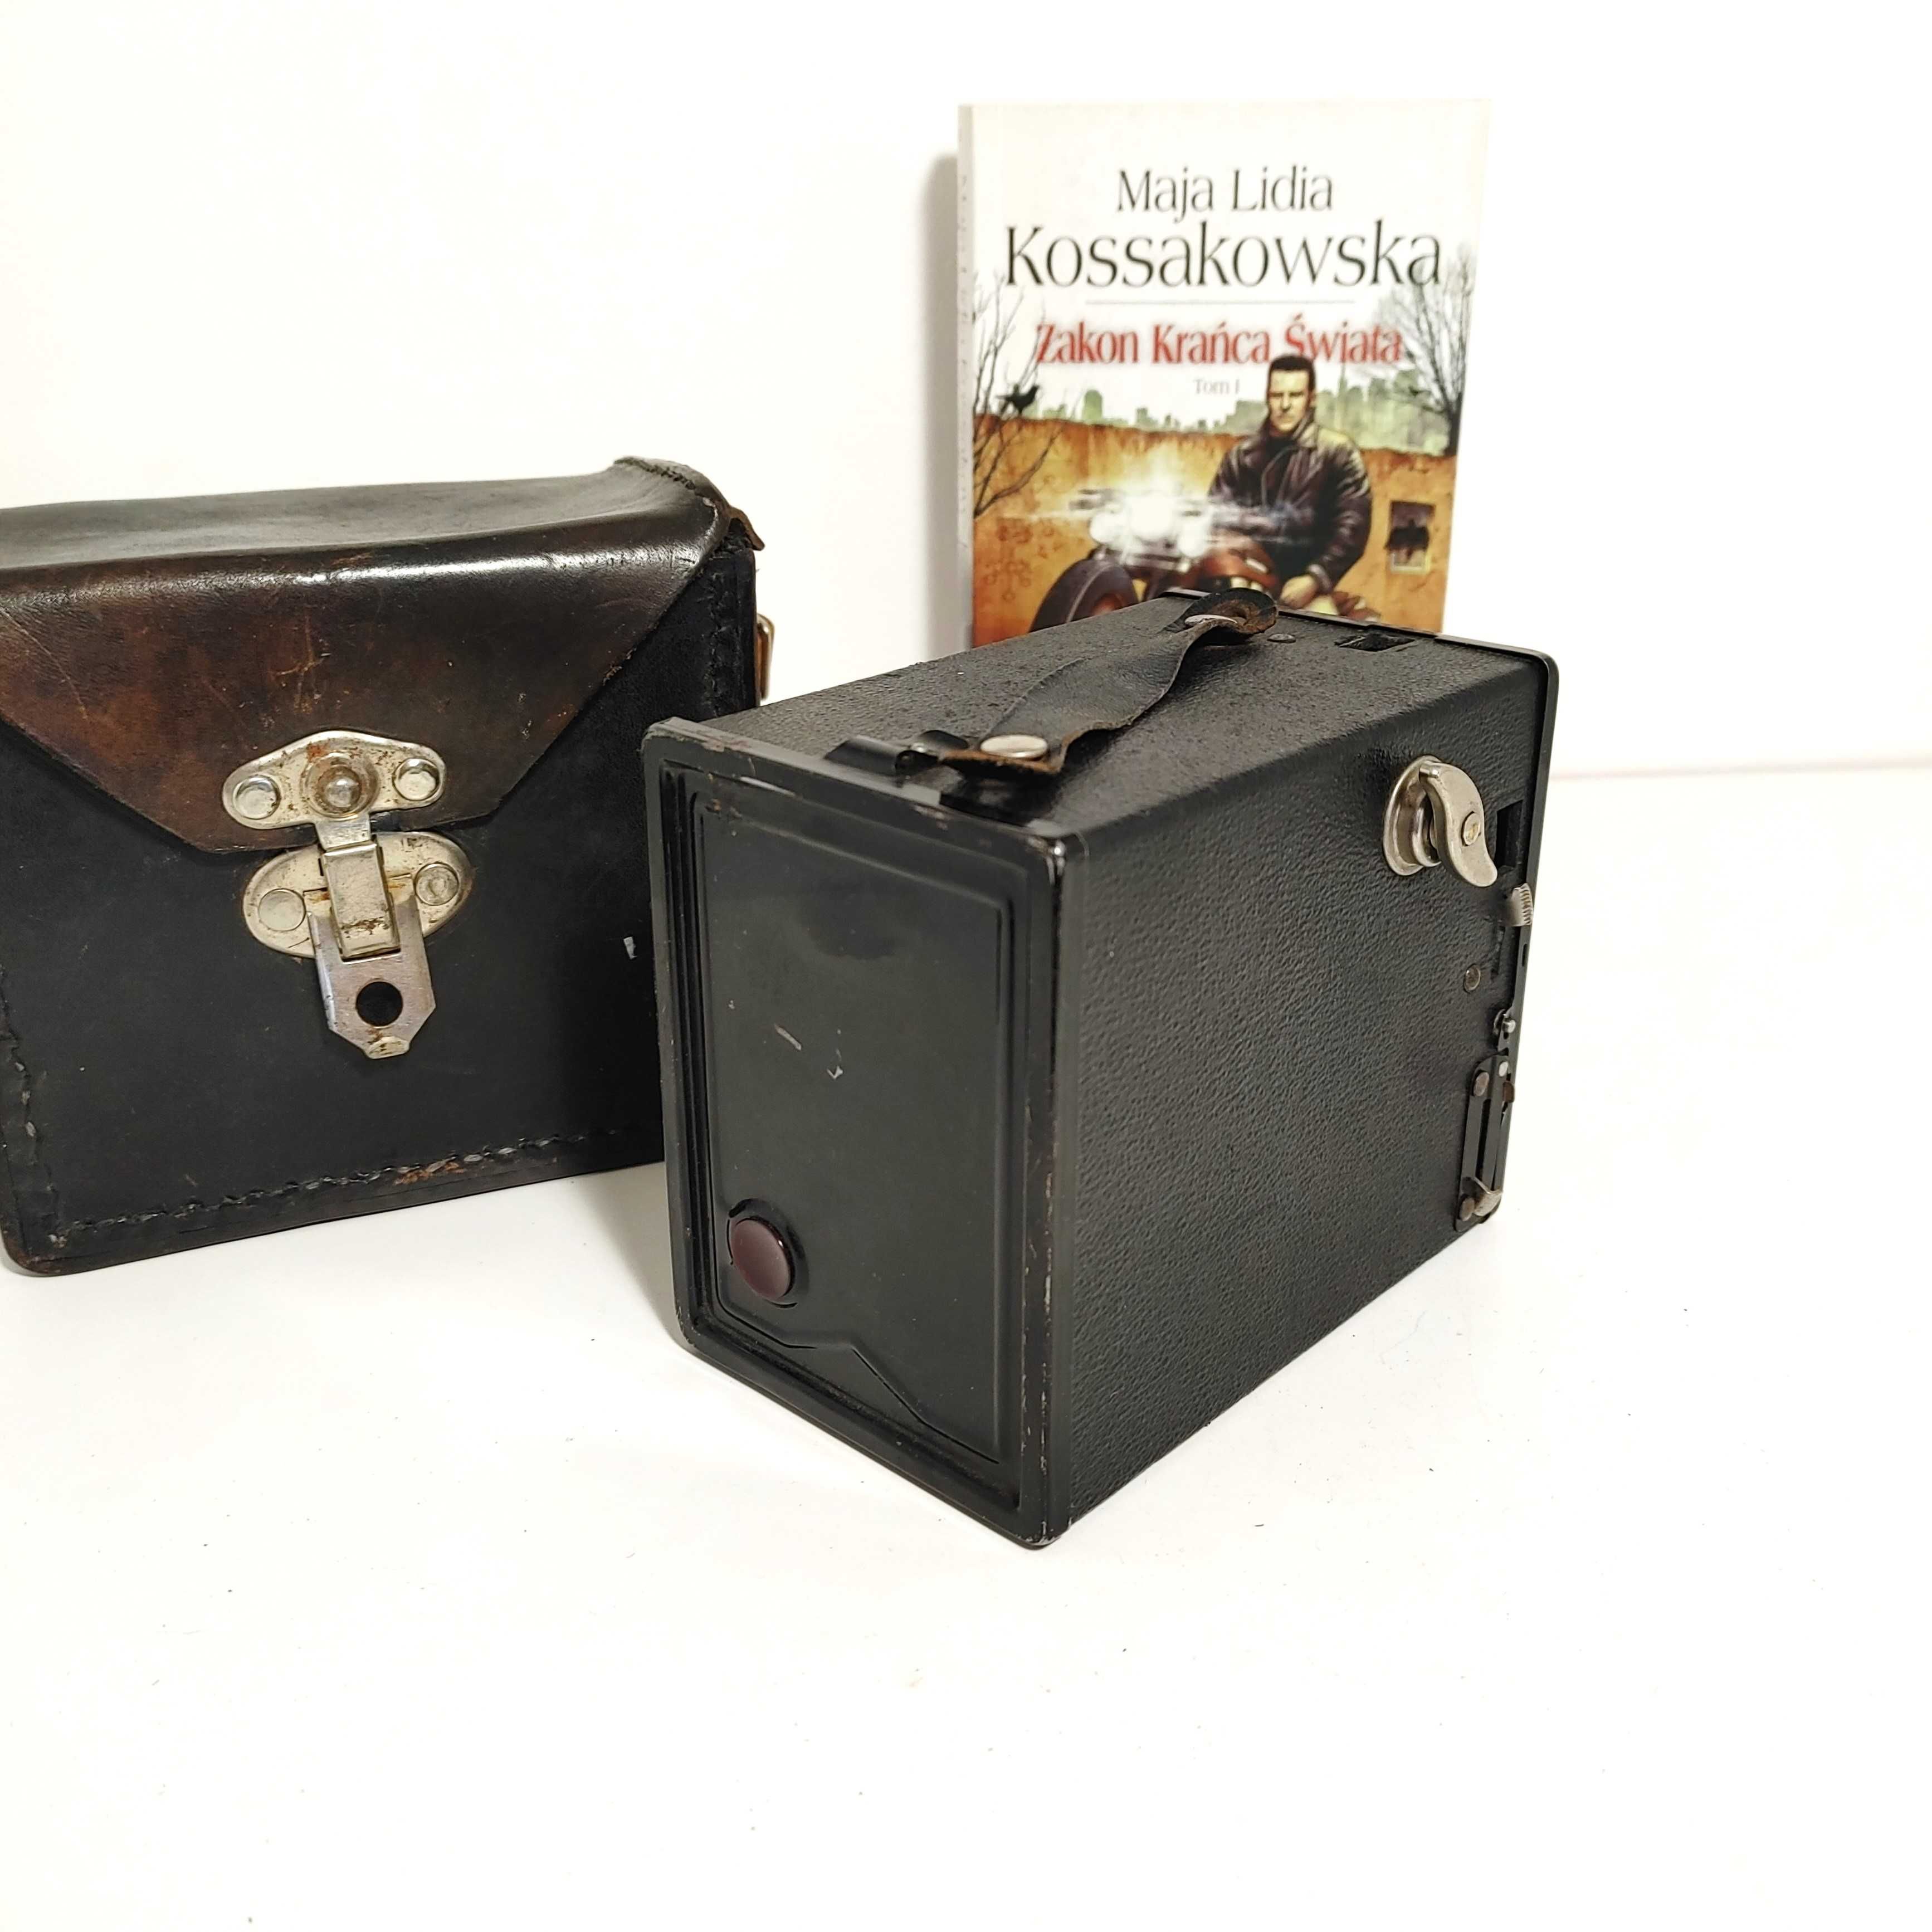 Aparat analogowy pudełkowy AGFA Box 44 z 1933 roku